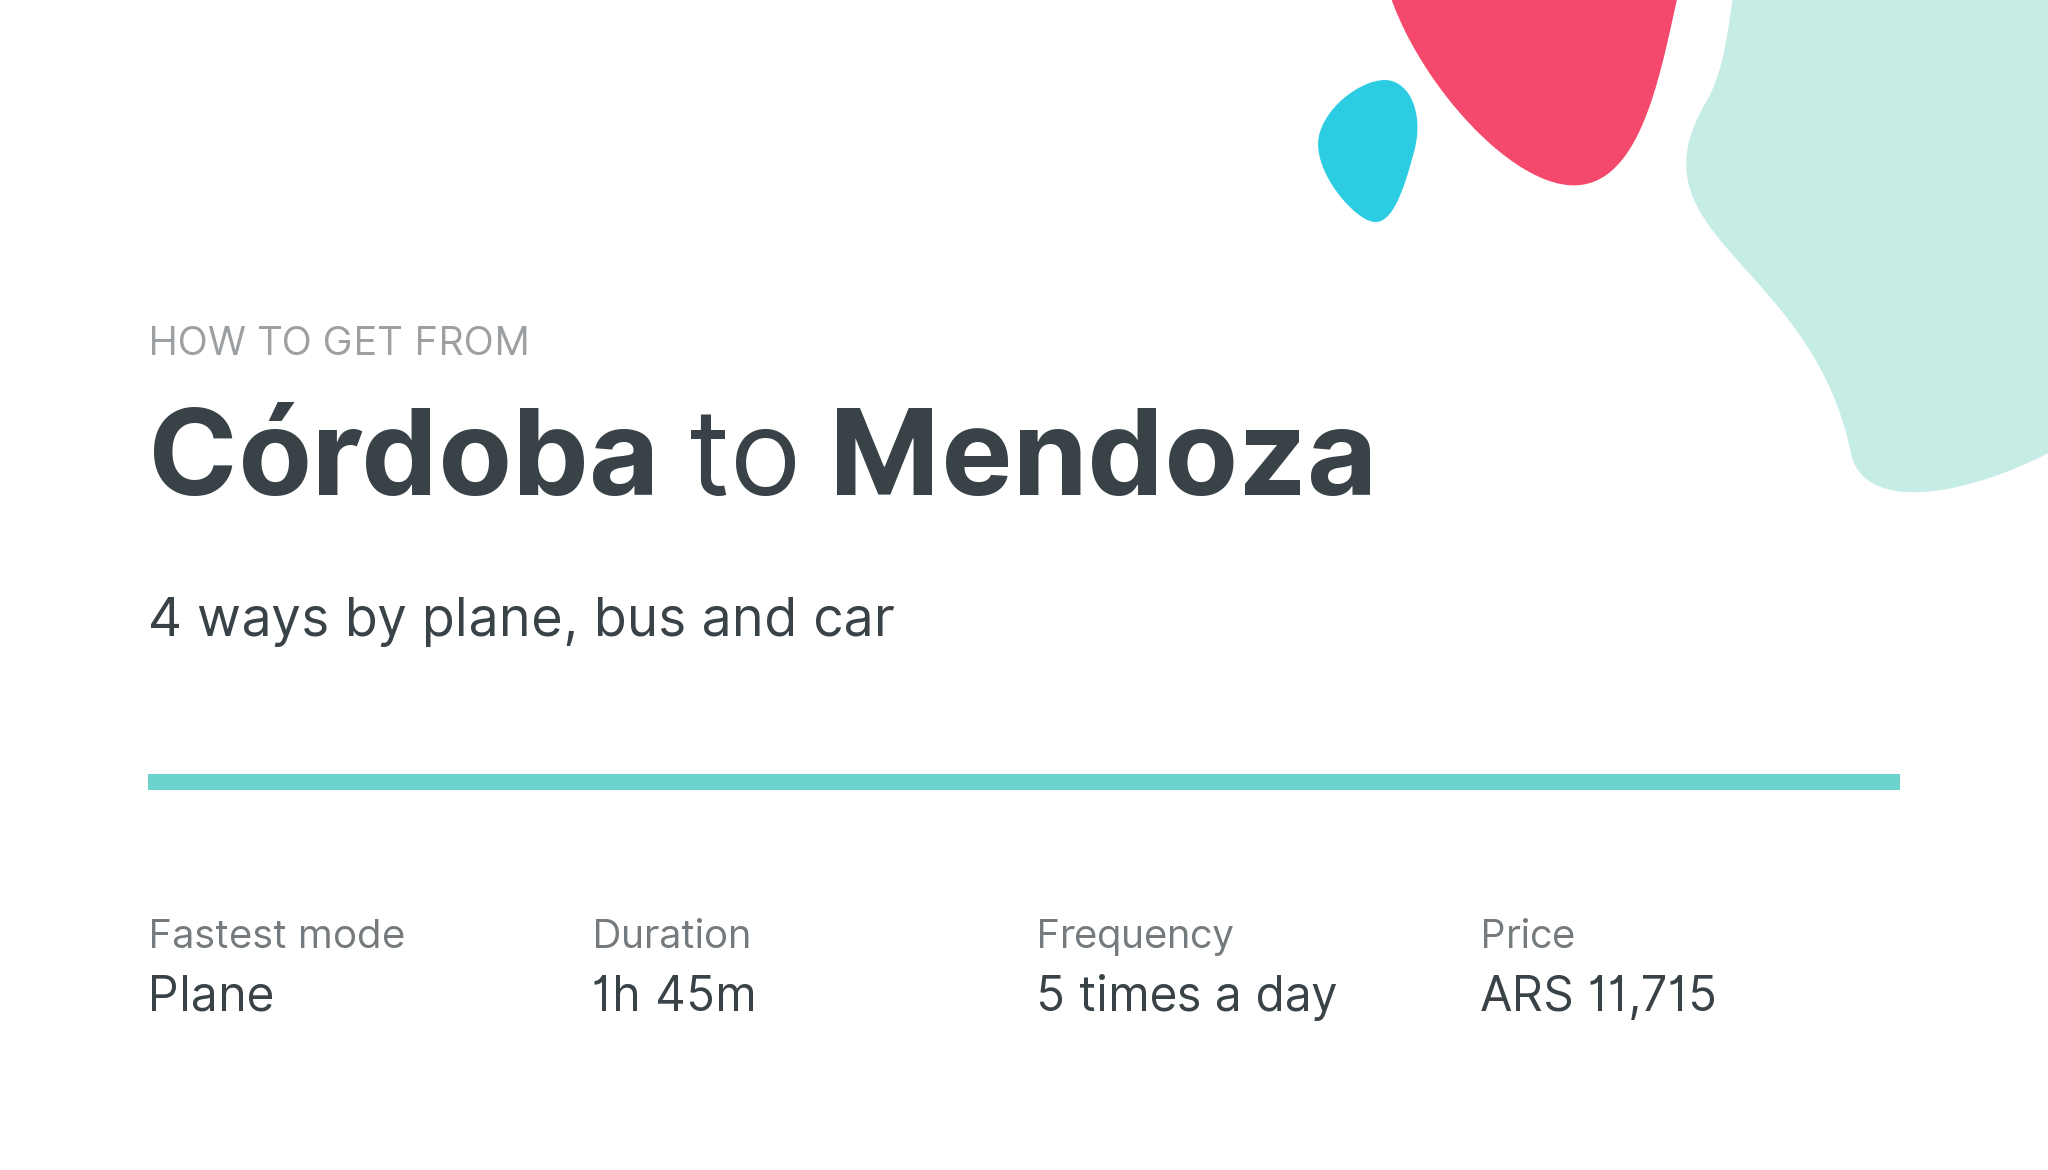 How do I get from Córdoba to Mendoza